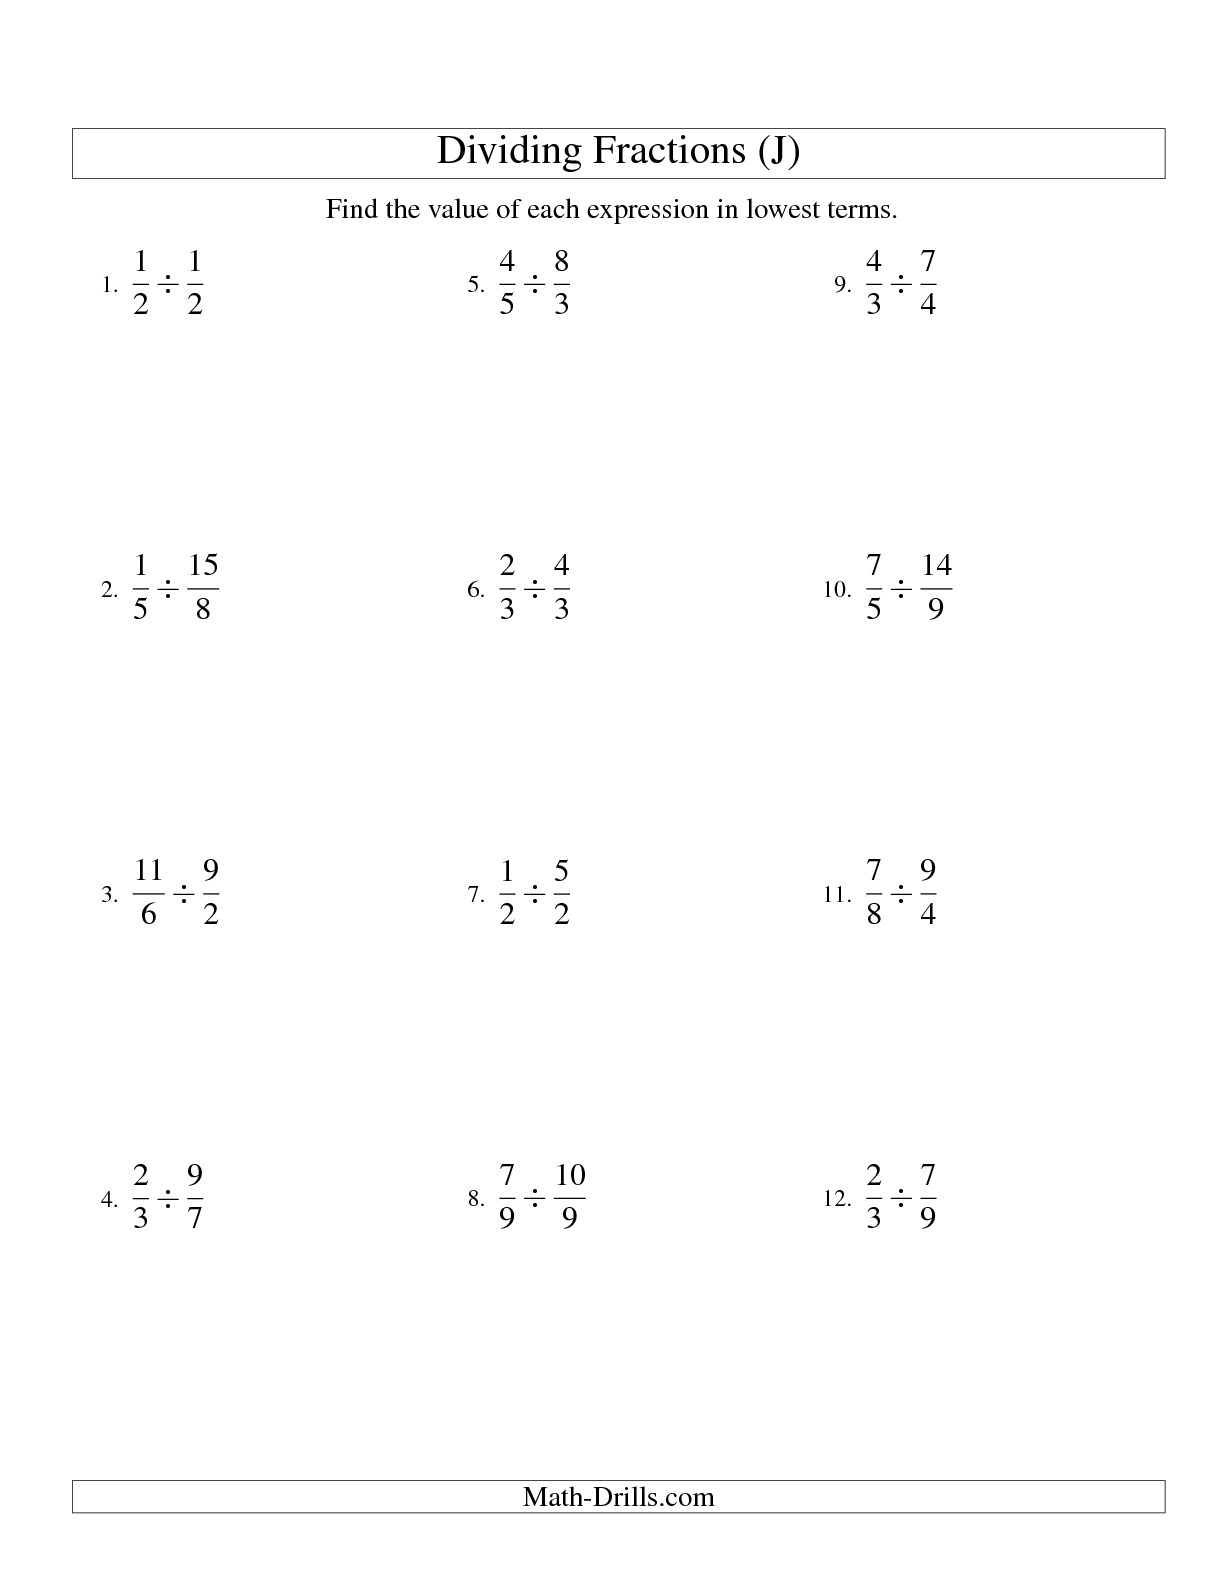 Proper and Improper Fractions Worksheets Image